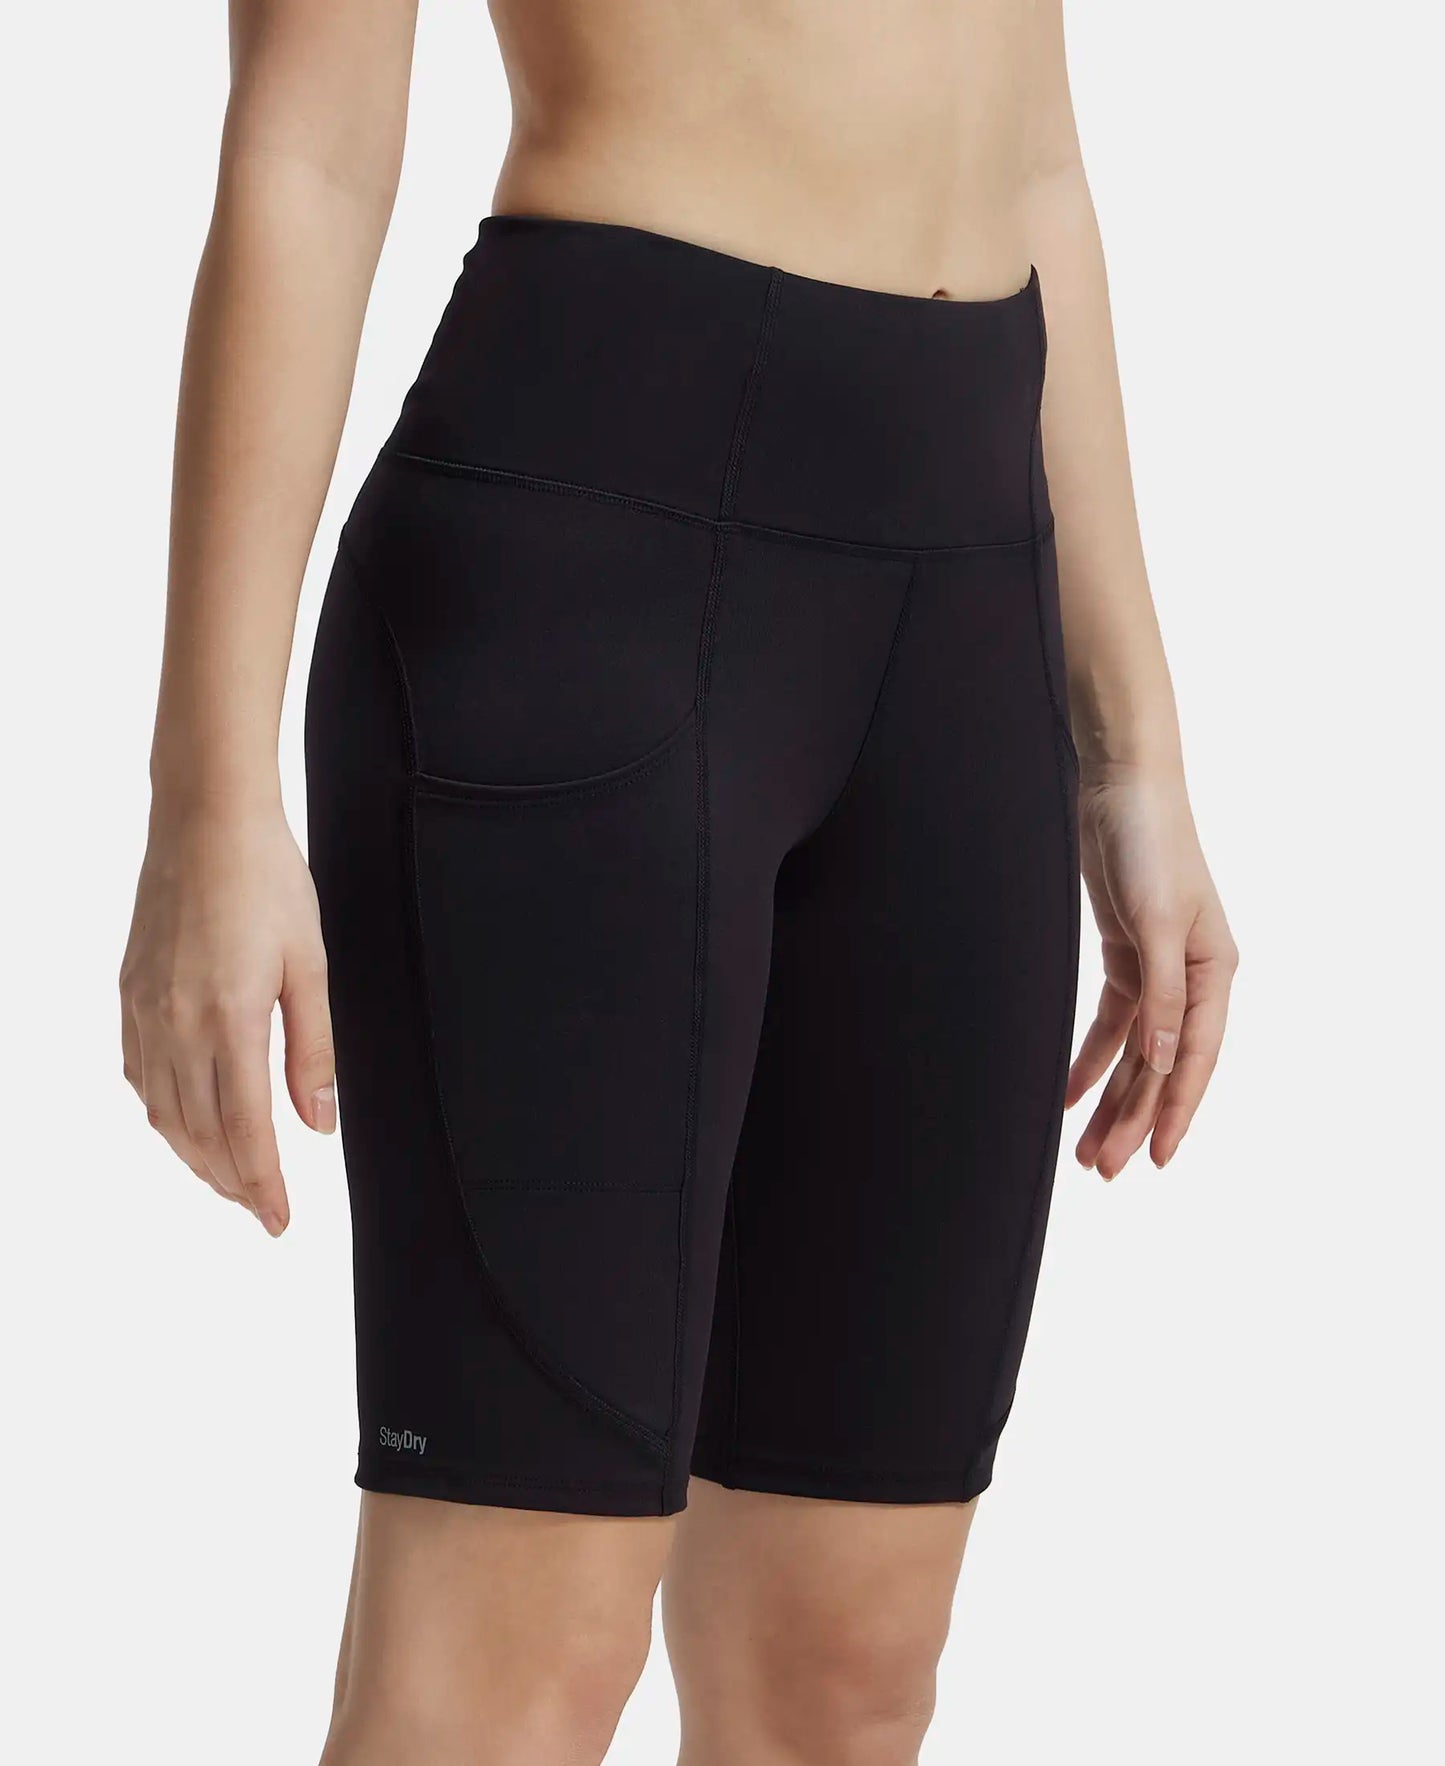 Microfiber Elastane Slim Fit Shorts with Side Pockets - Black-2